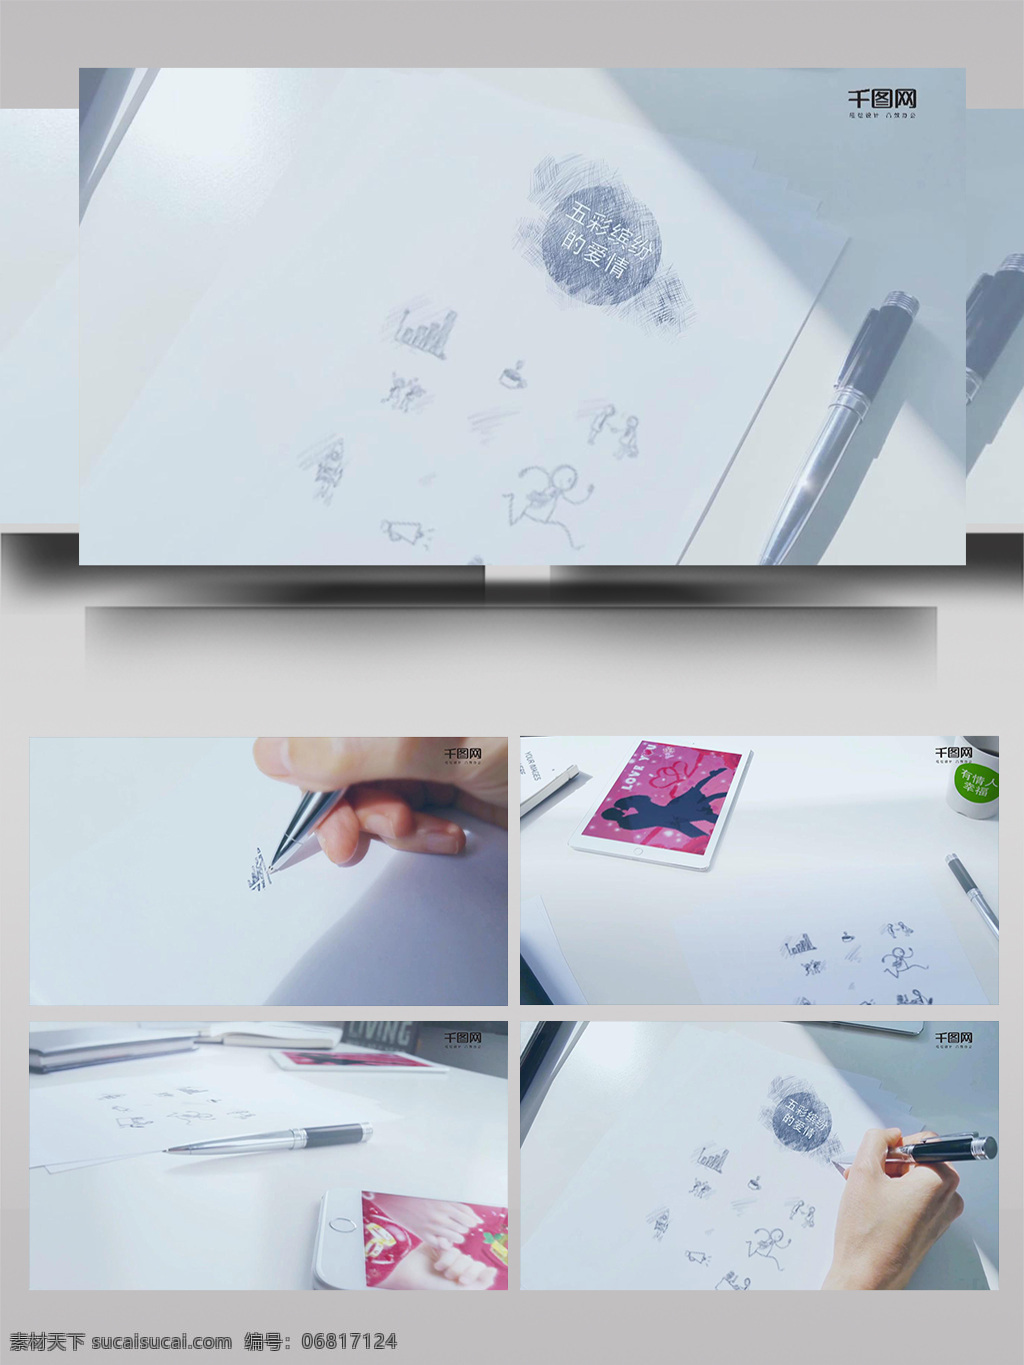 简洁 铅笔 手工 绘制 图文 线条 ae 模板 笔刷 照片 游戏 艺术 动画 记忆 颜料 画笔 卡通 纸张 二位 场景 视频 电子 水彩 小素材 转场 过渡